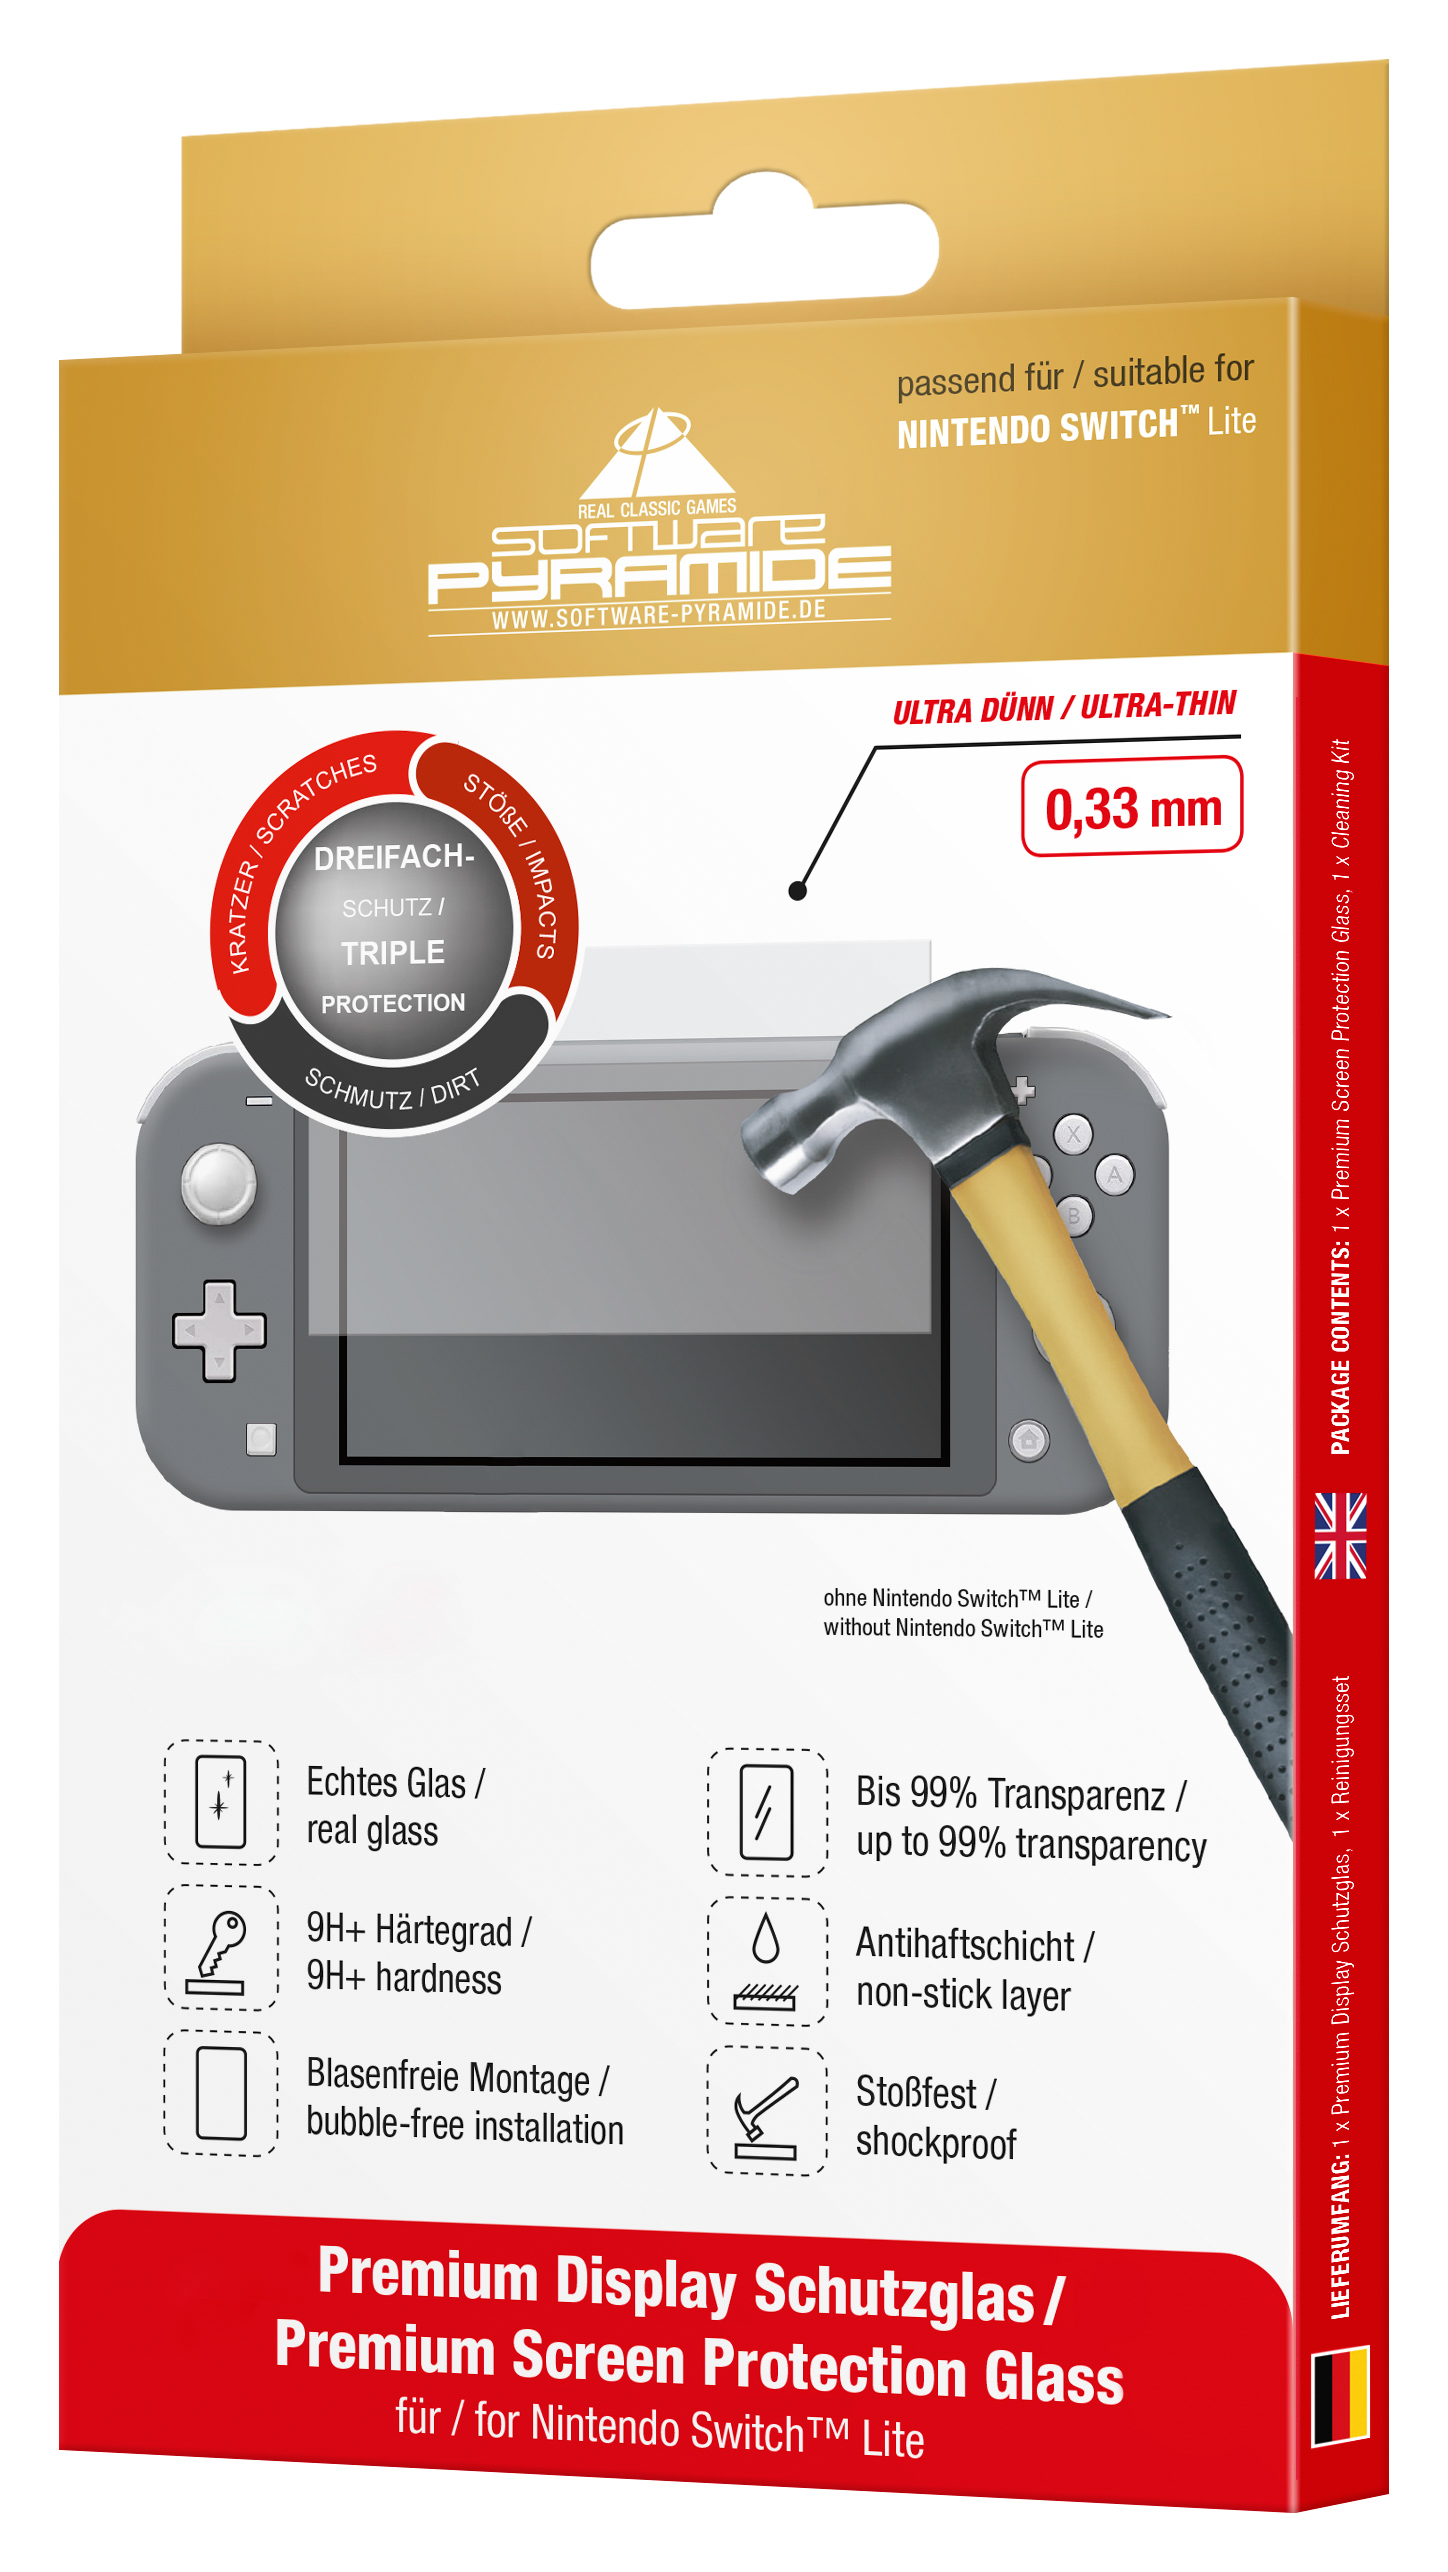 Nintendo Switch Lite: Schutzglas